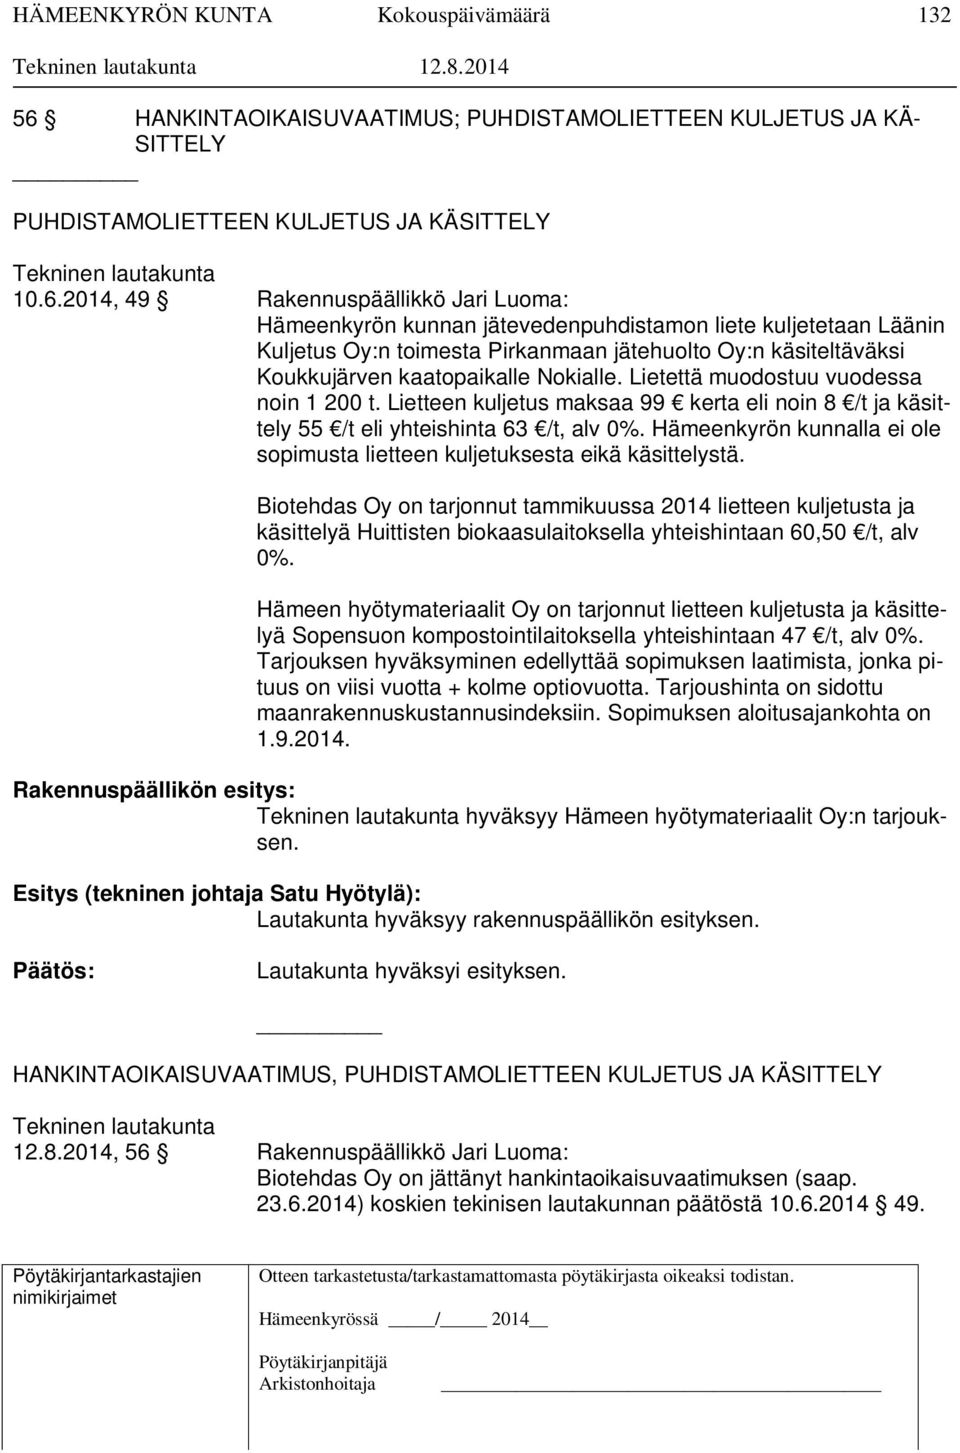 2014, 49 Rakennuspäällikkö Jari Luoma: Hämeenkyrön kunnan jätevedenpuhdistamon liete kuljetetaan Läänin Kuljetus Oy:n toimesta Pirkanmaan jätehuolto Oy:n käsiteltäväksi Koukkujärven kaatopaikalle